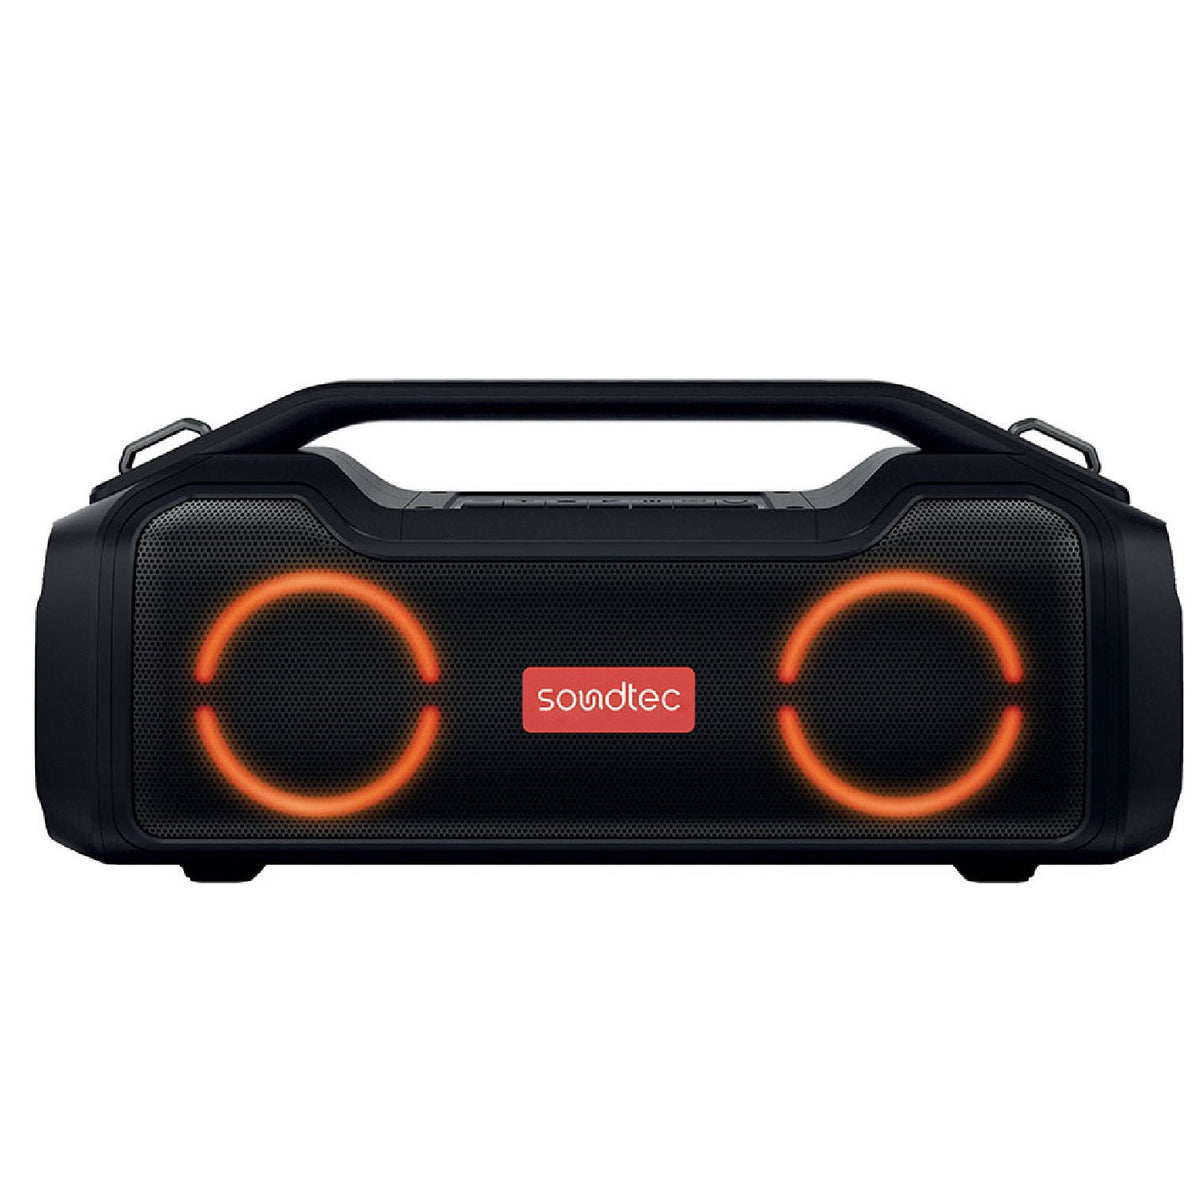 Porodo Soundtec Vibe Portable Speaker with Smart Functions - Black [ PD-STVBPSPK-BK ]